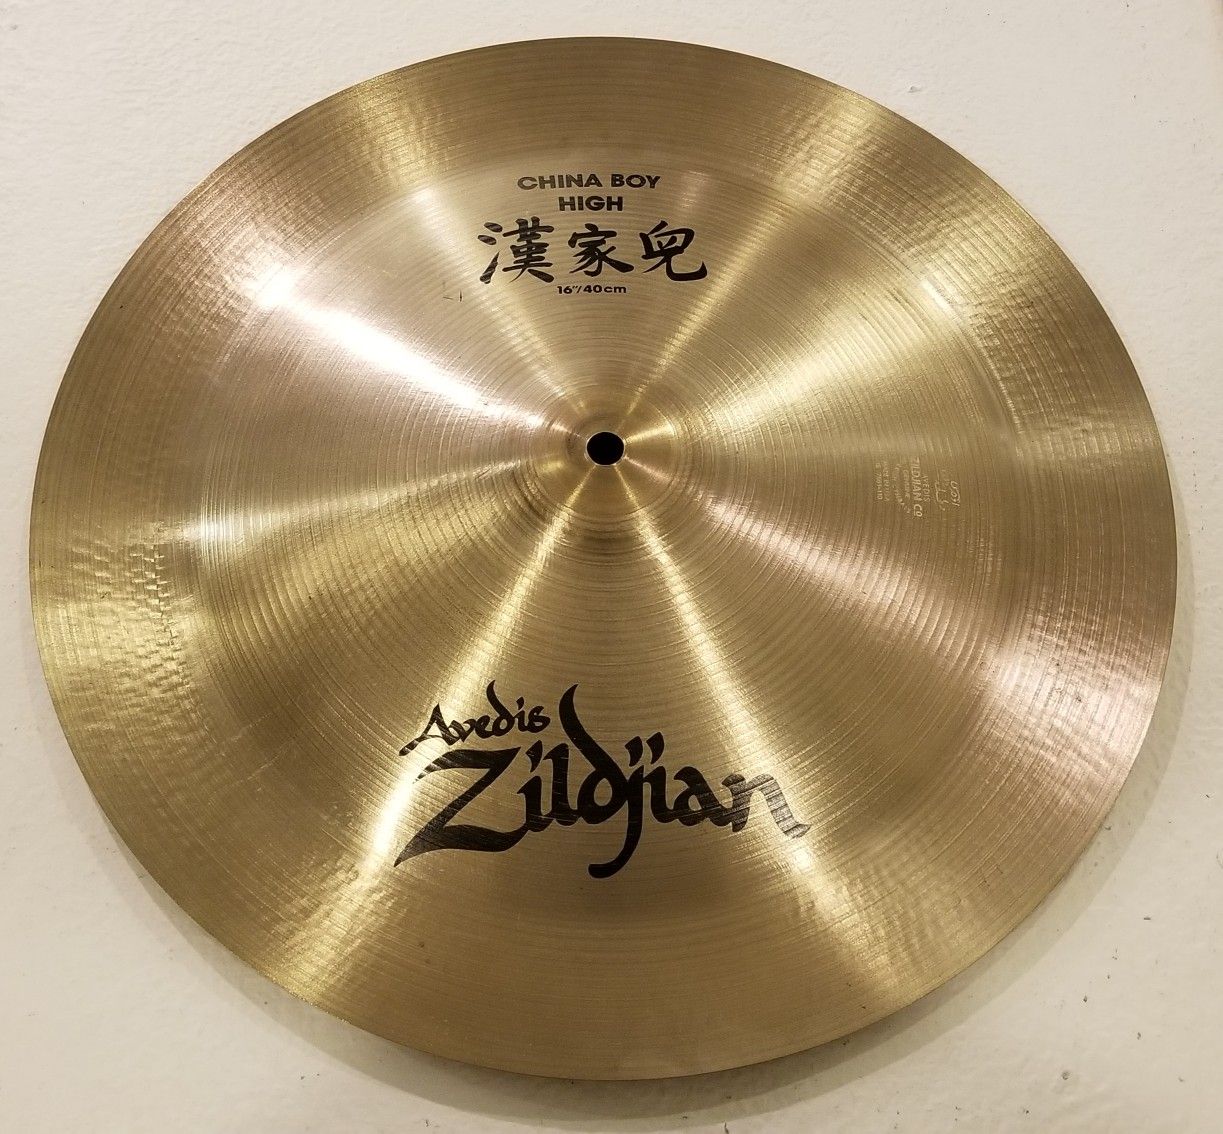 Zildjian 16"/40cm China Boy High Cymbal